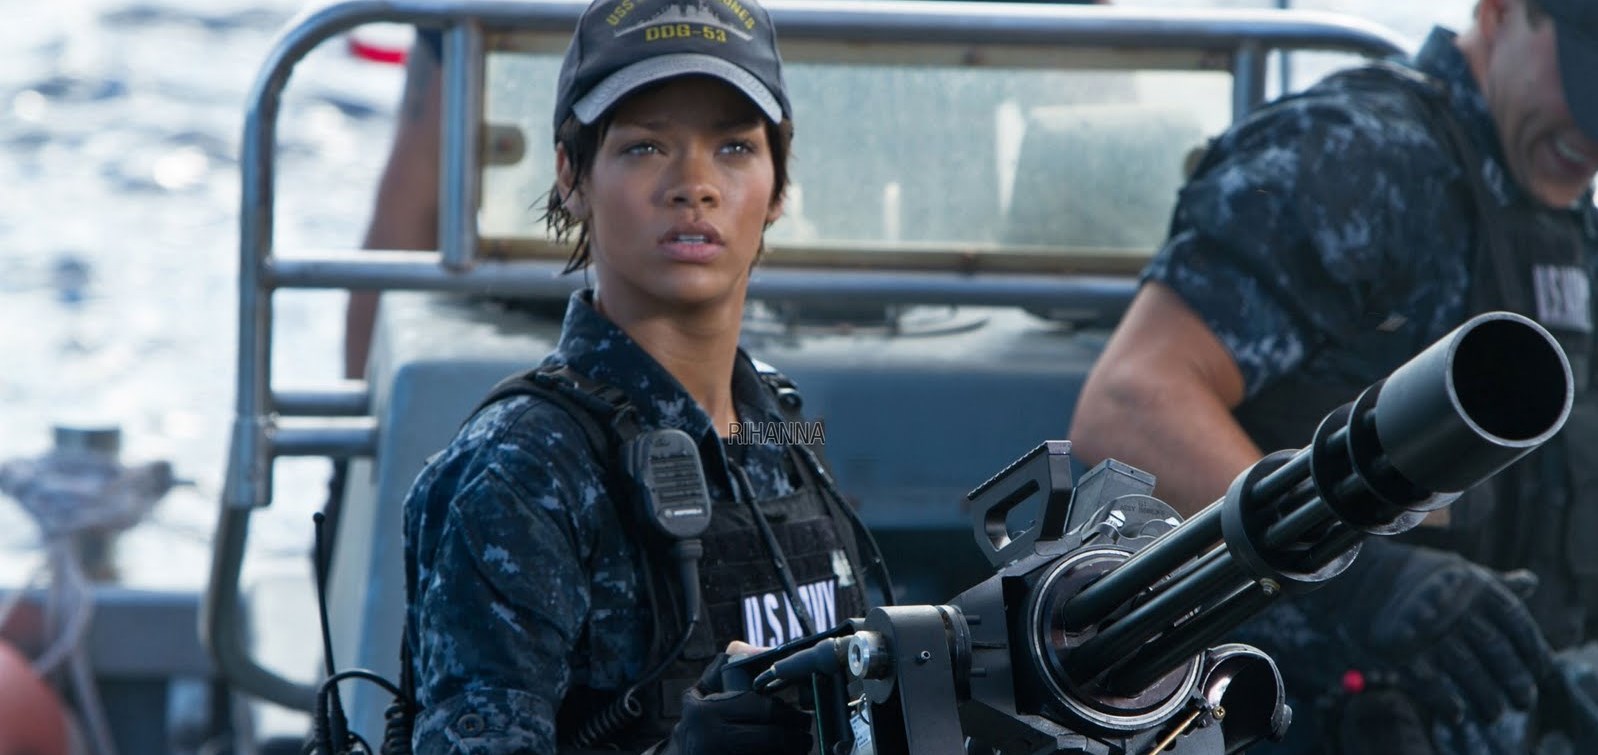 Rihanna'nın Yeni Kamera Arkası Görüntüleri – Rihanna'nın oynadığı 'Battleship' filminin kamera arkası görüntüleri yayınlandı